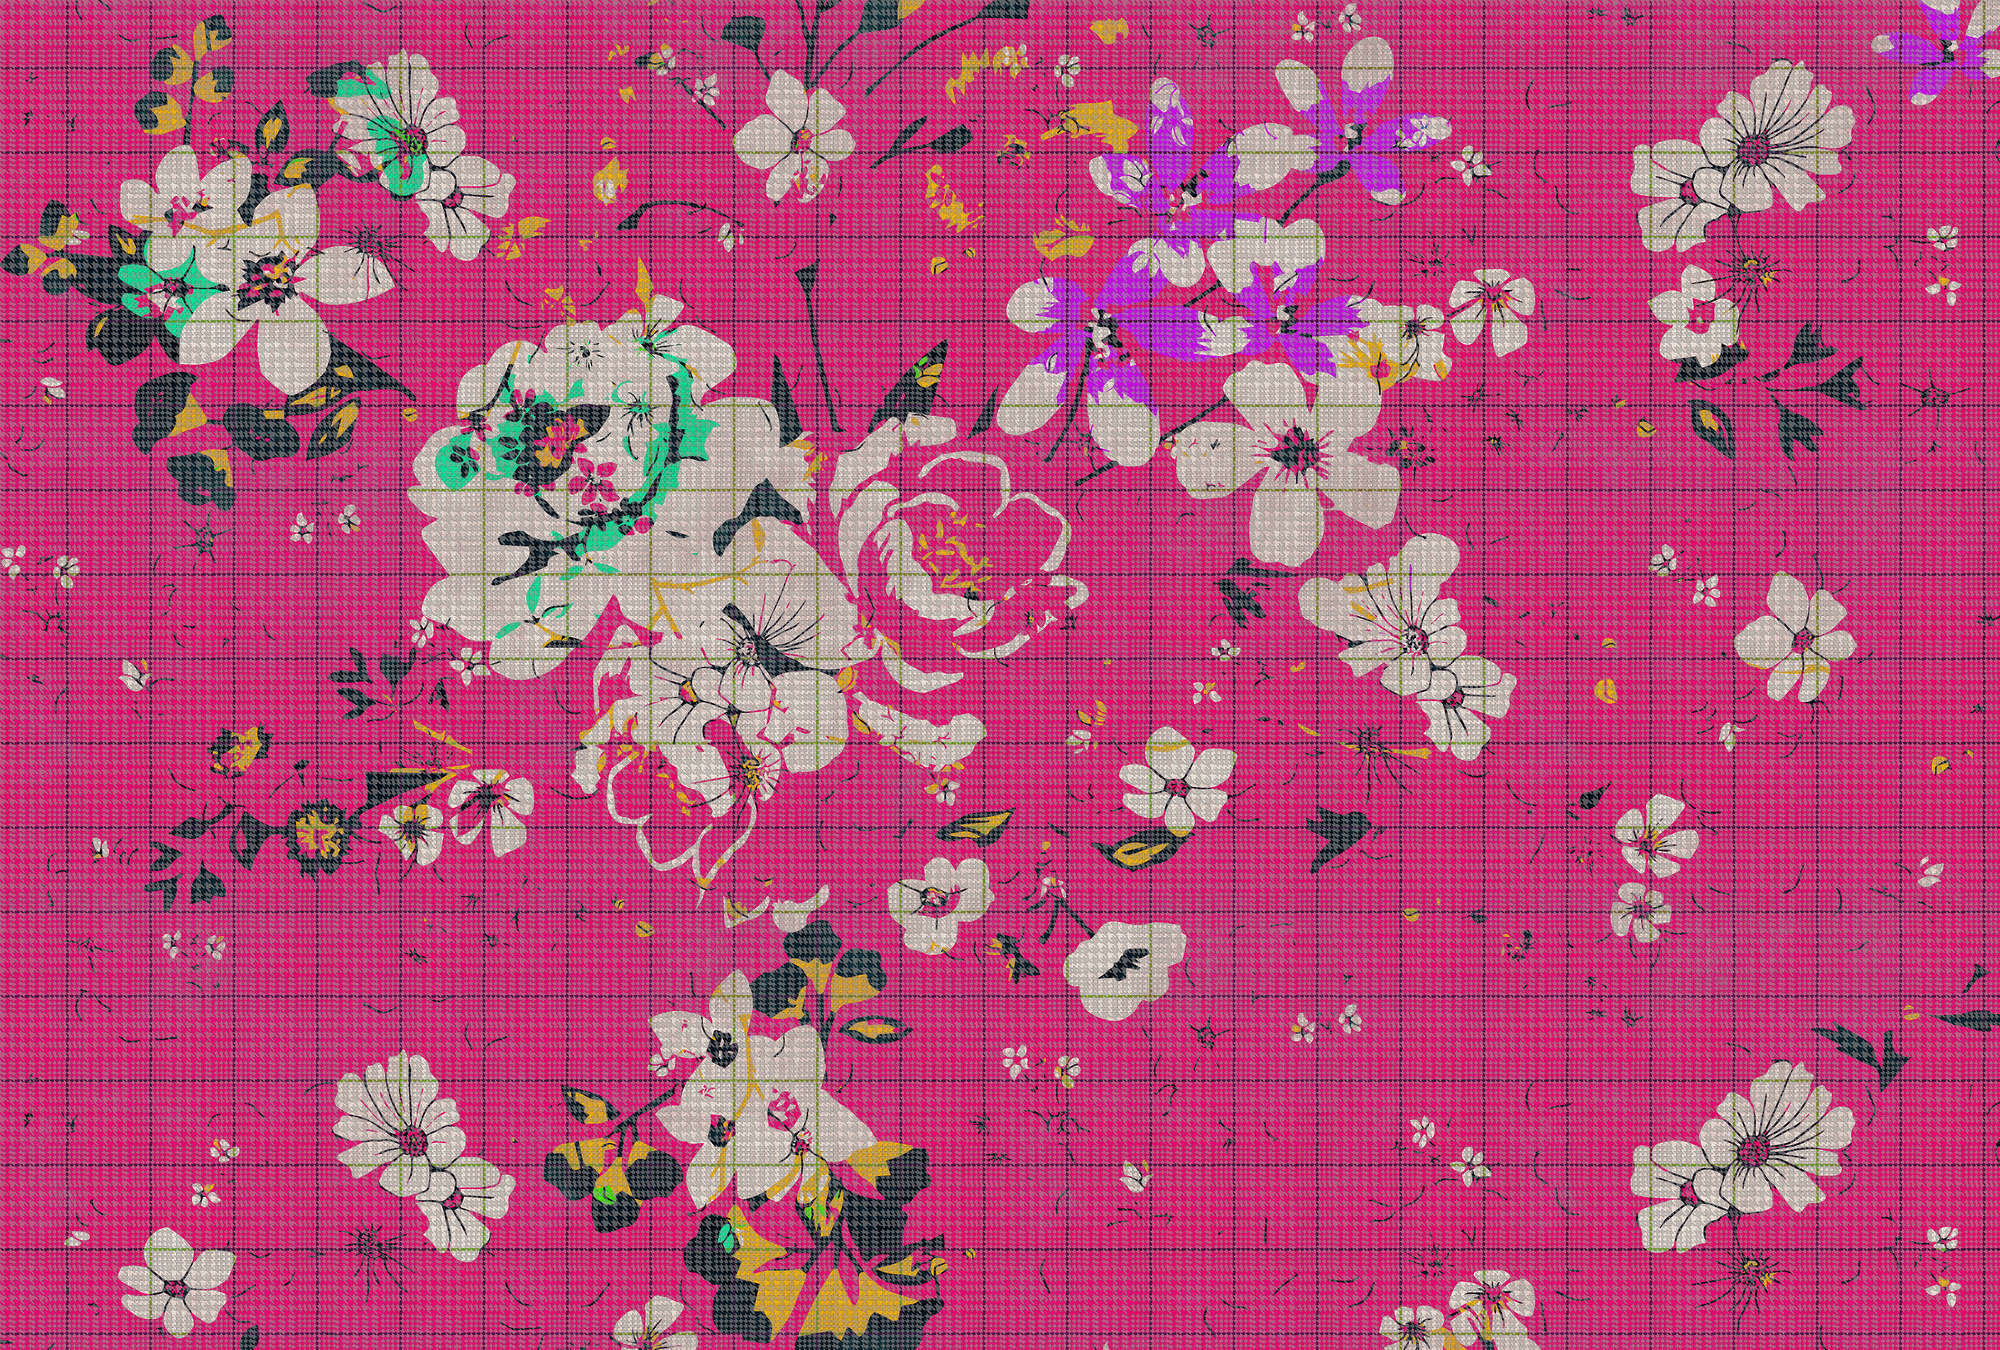             Cuadriculado de flores 2 - Papel pintado fotomural en óptica de cuadros mosaico de flores de colores Rosa - Verde, Rosa | estructura no tejida
        